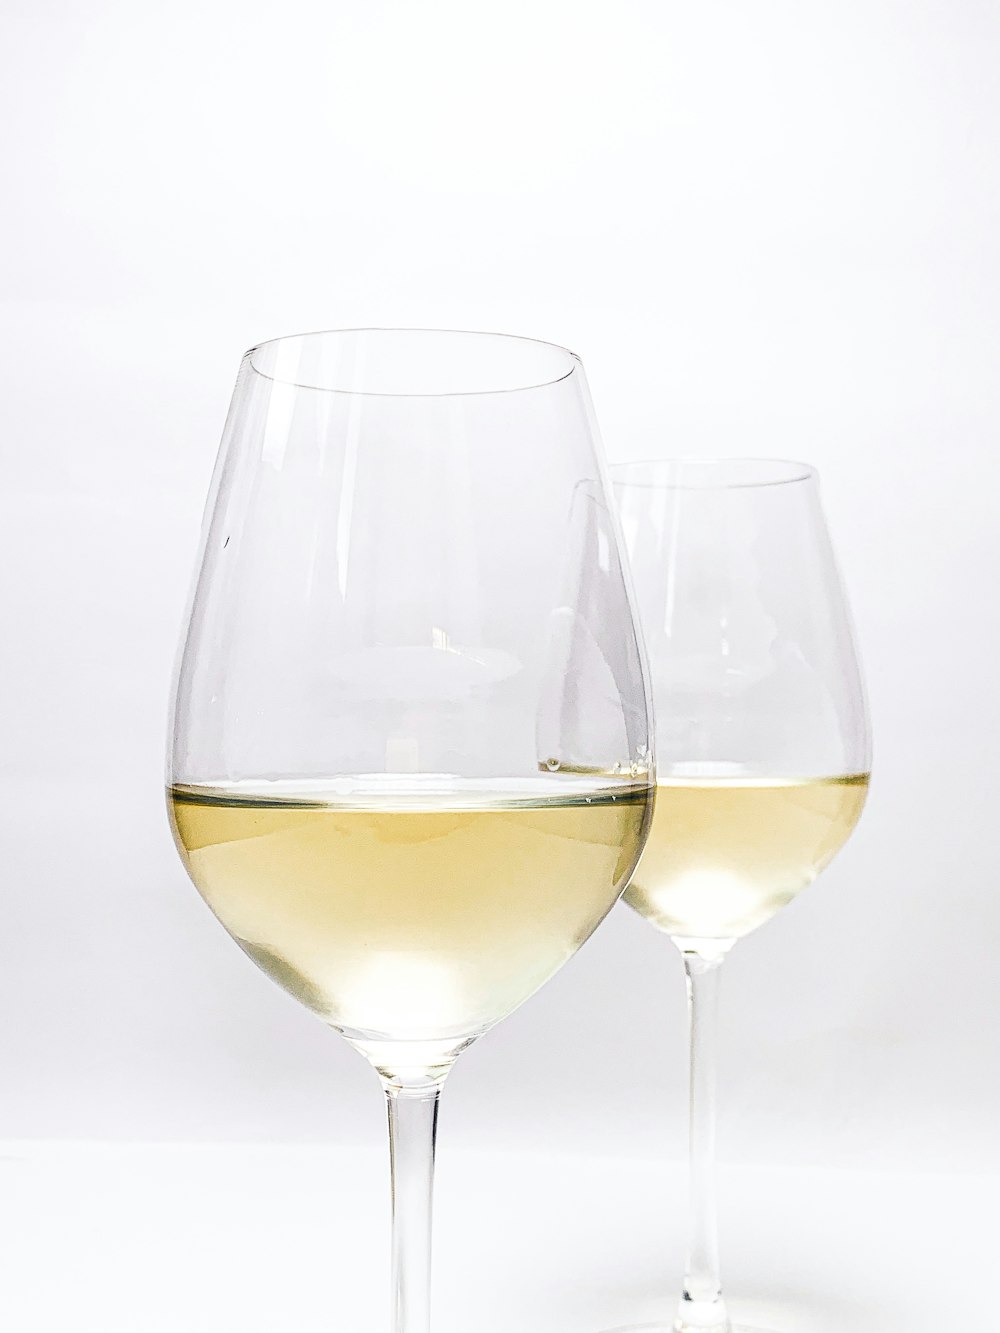 Bicchiere da vino trasparente con liquido giallo